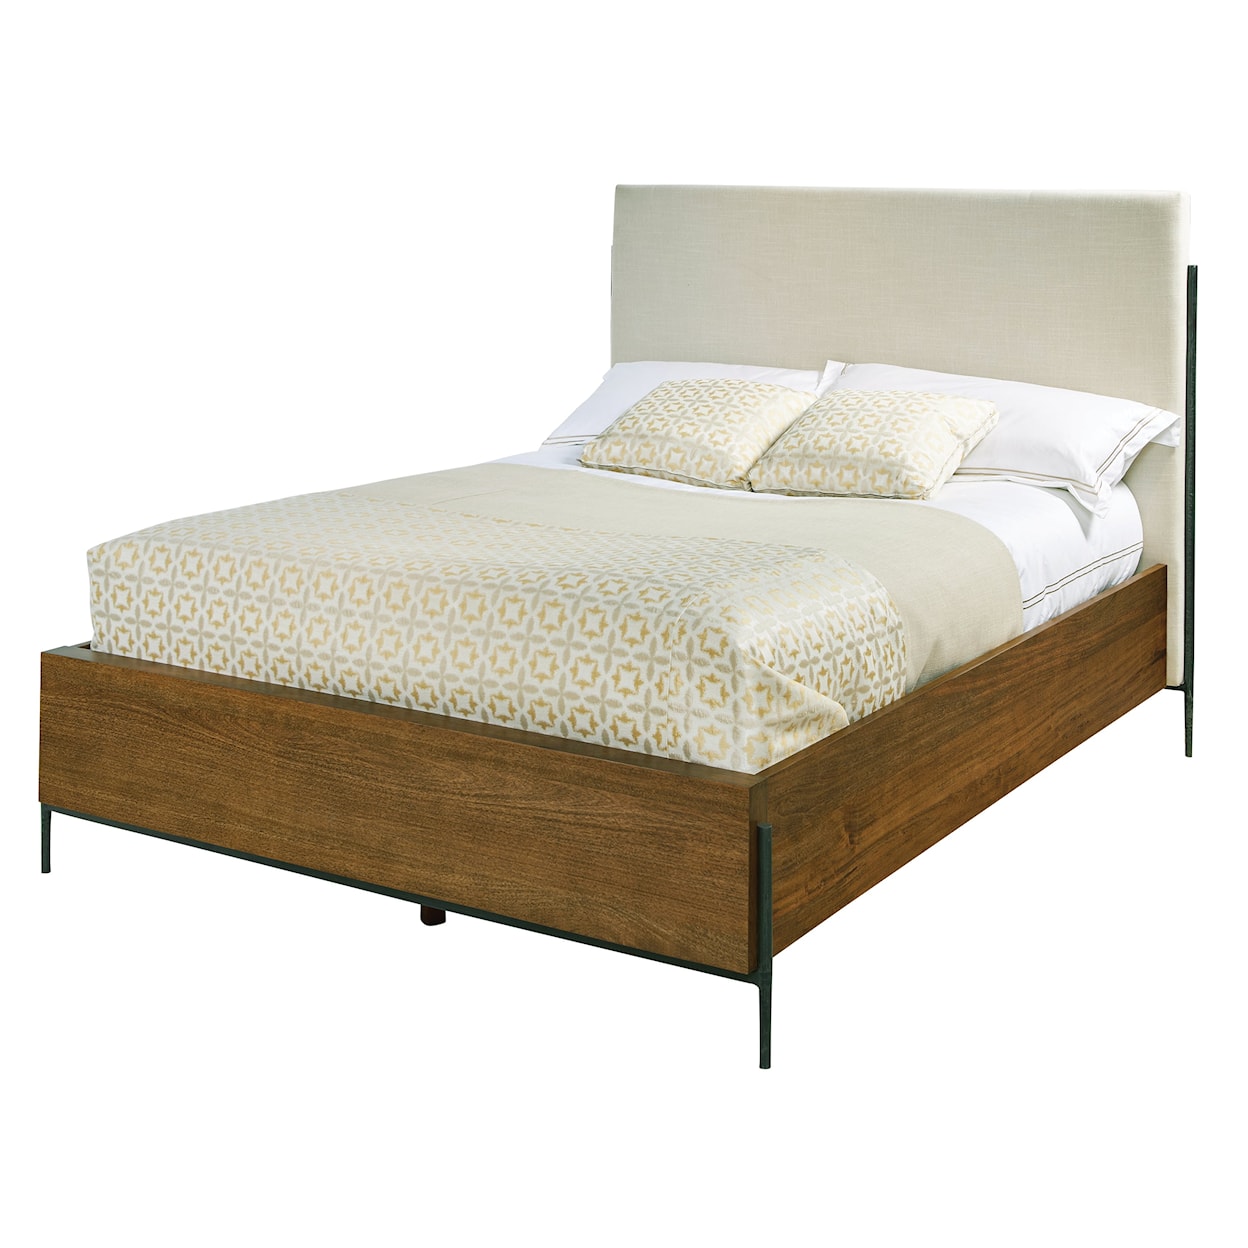 Hekman Bedford Park Queen Upholstered Bed